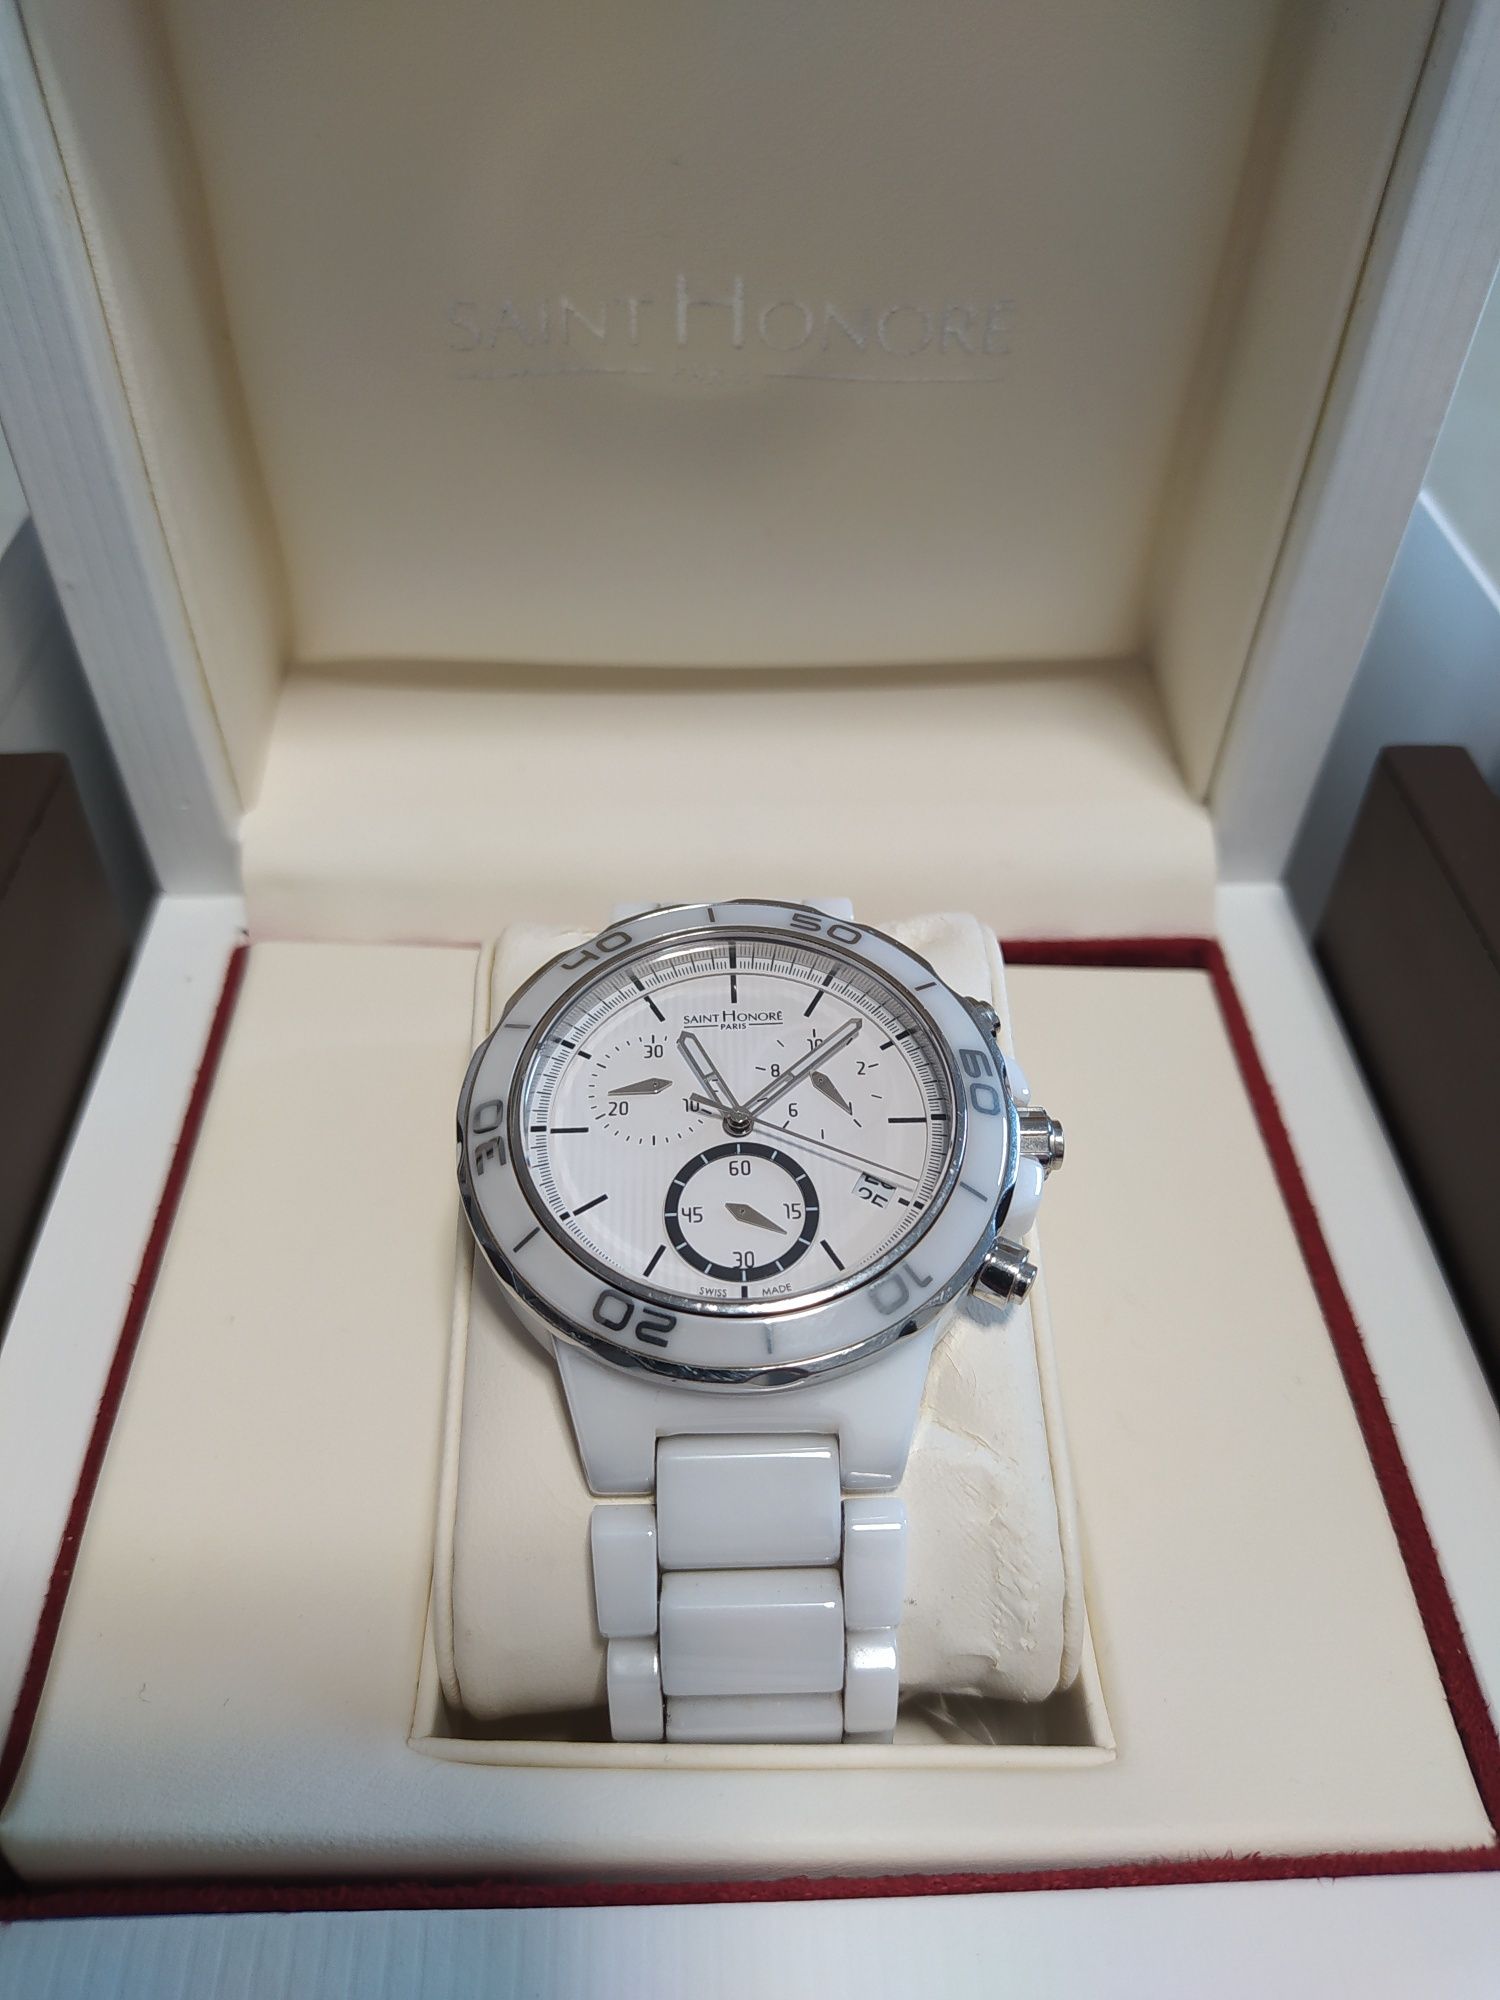 Zegarek damski Saint Honore szwajcarski kupiony w Yes